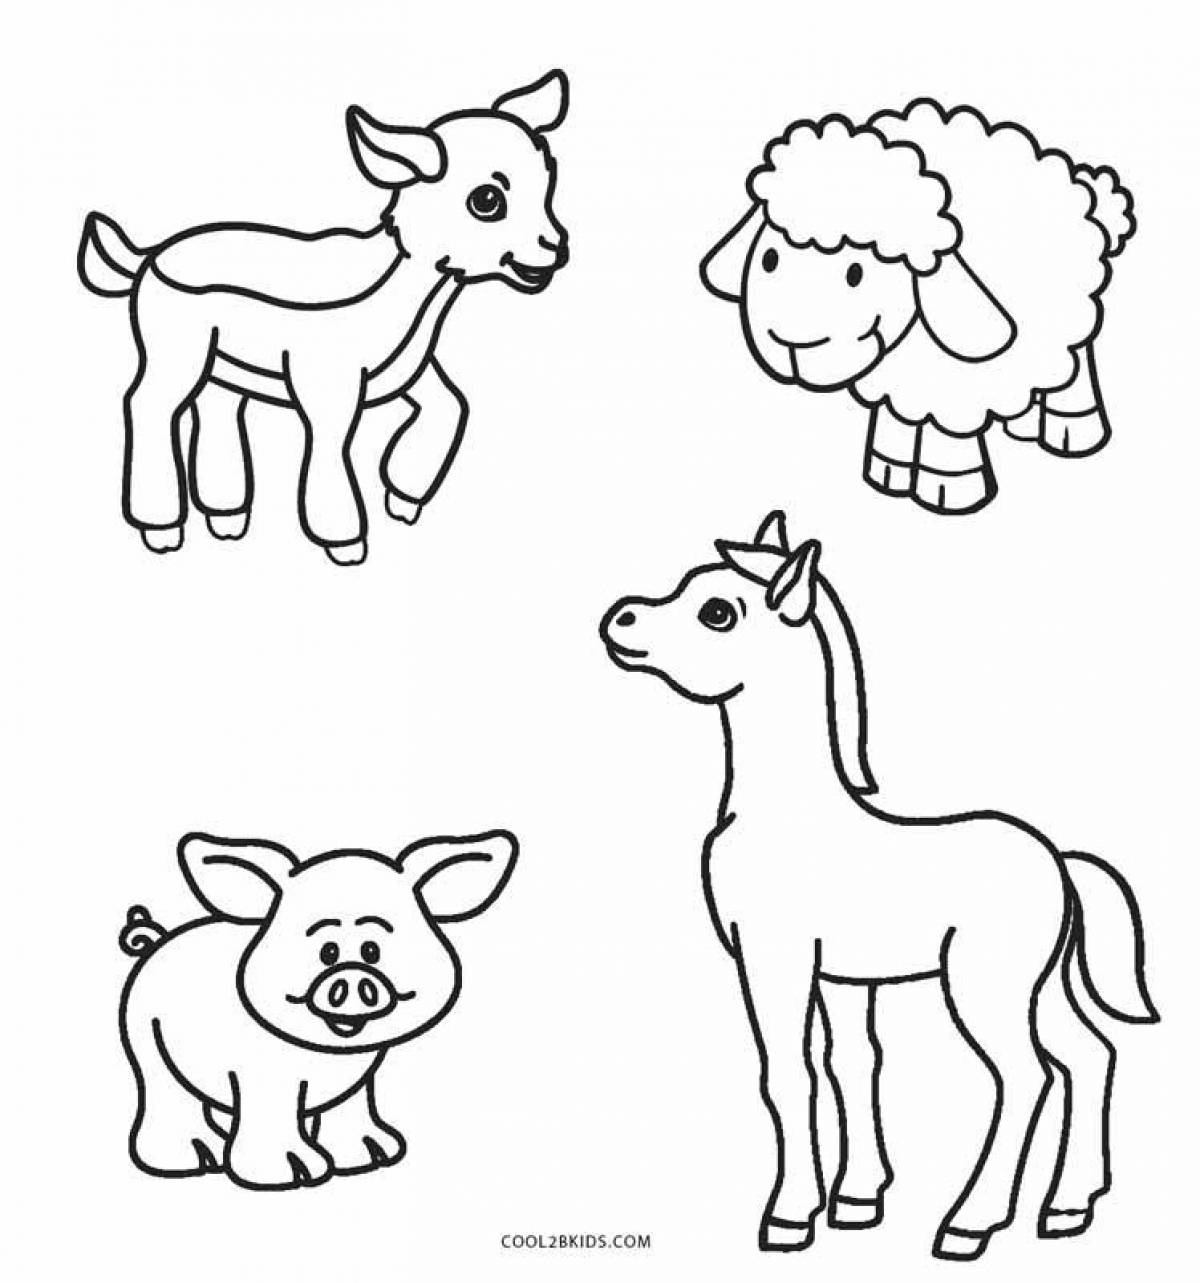 Живые раскраски животных для детей